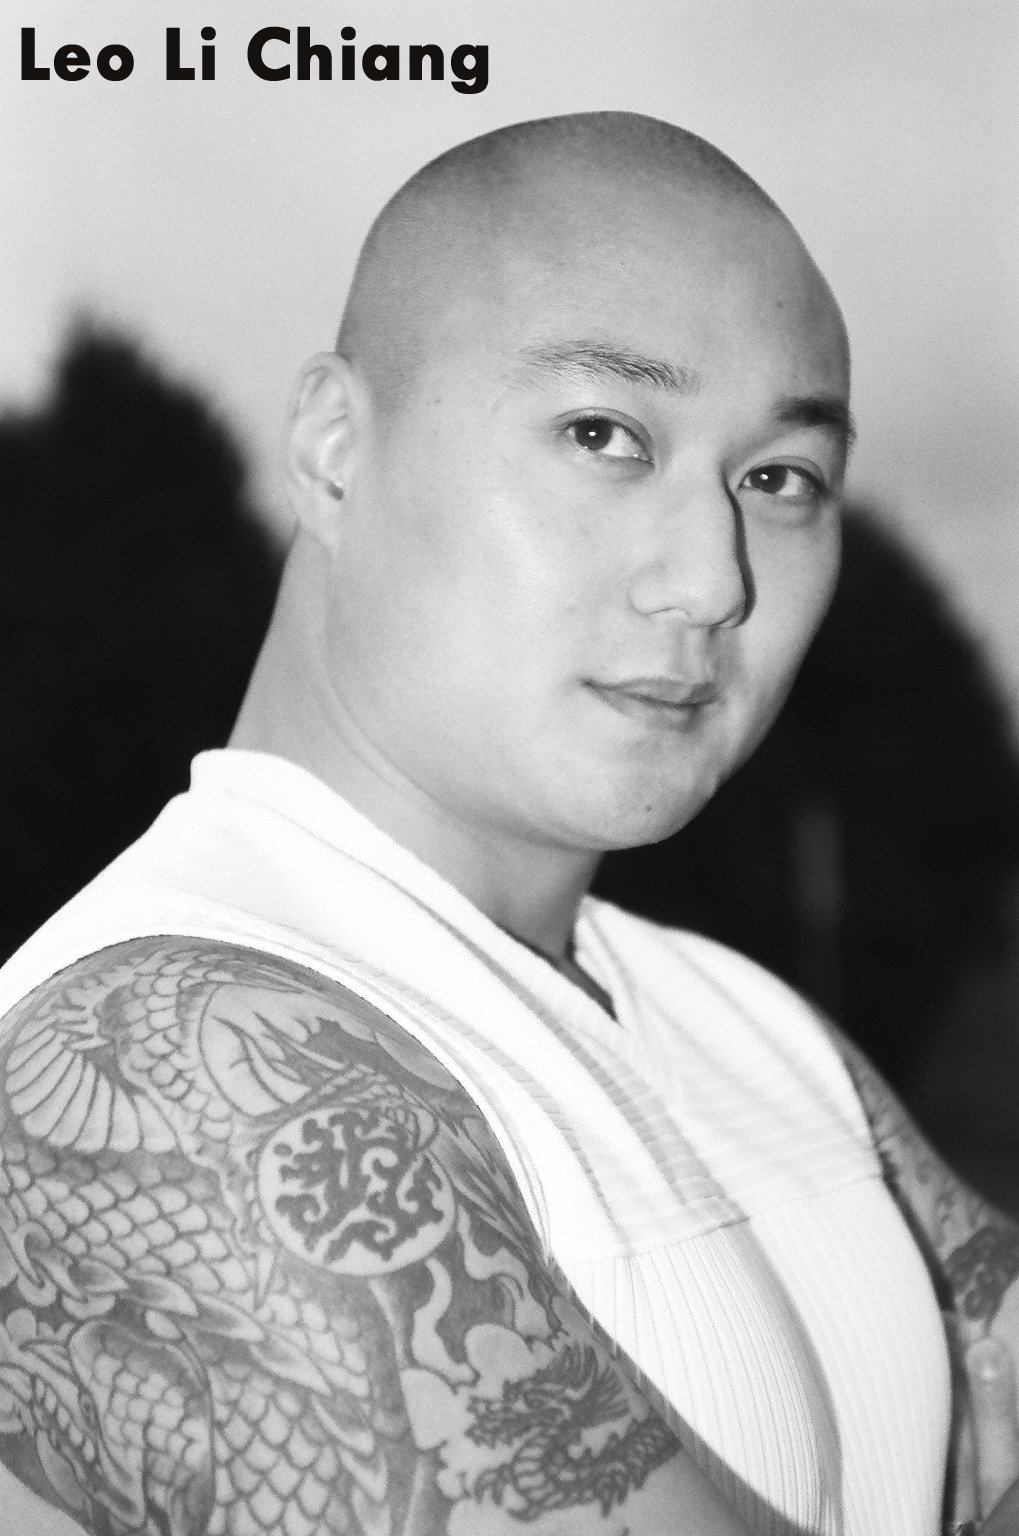 Leo Li Chiang